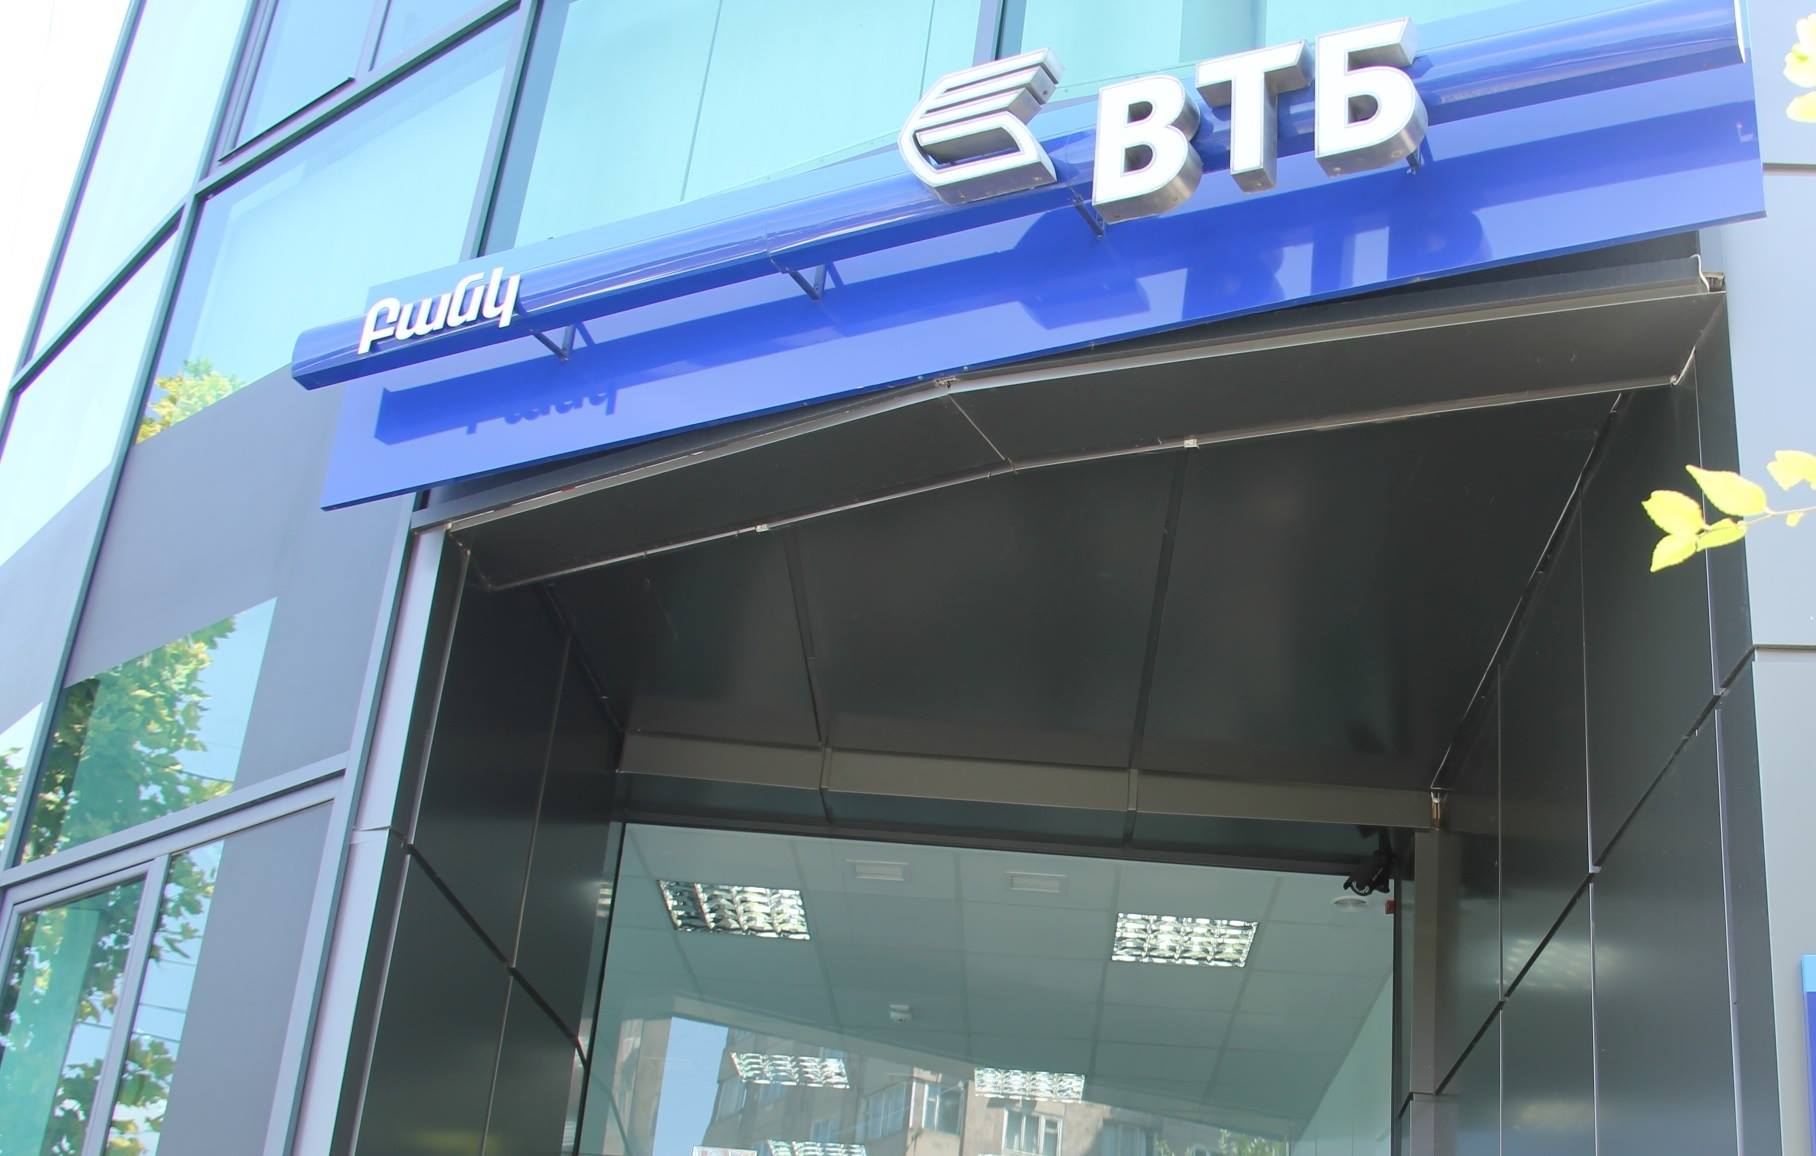 ՎՏԲ-Հայաստան Բանկը, հանդիսանալով ապահովագրական գործակալ, առաջարկում է շահավետ պայմաններով ձեռք բերել ապահովագրական պրոդուկտներ